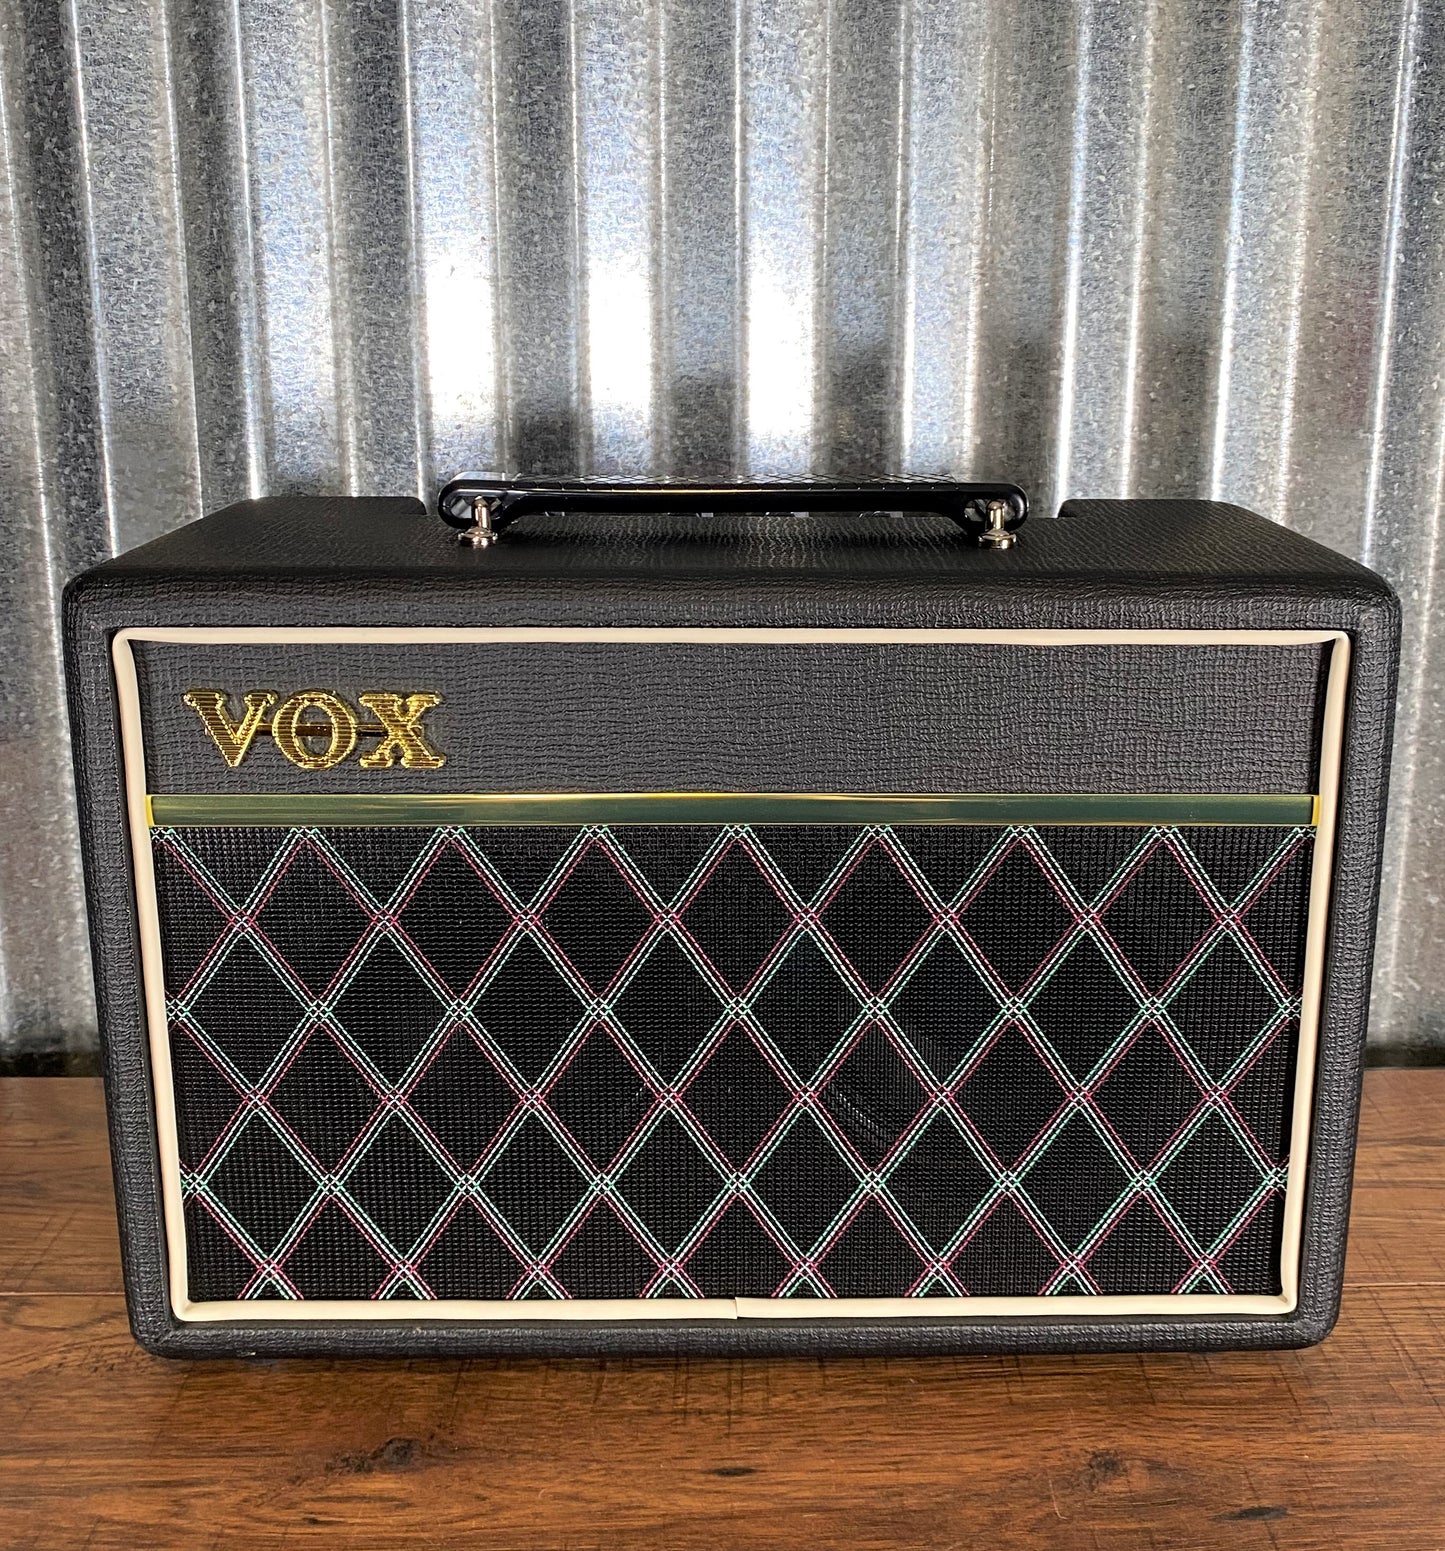 VOX Pathfinder Bass 10 Watt 2x5" Bass Combo Amplifier